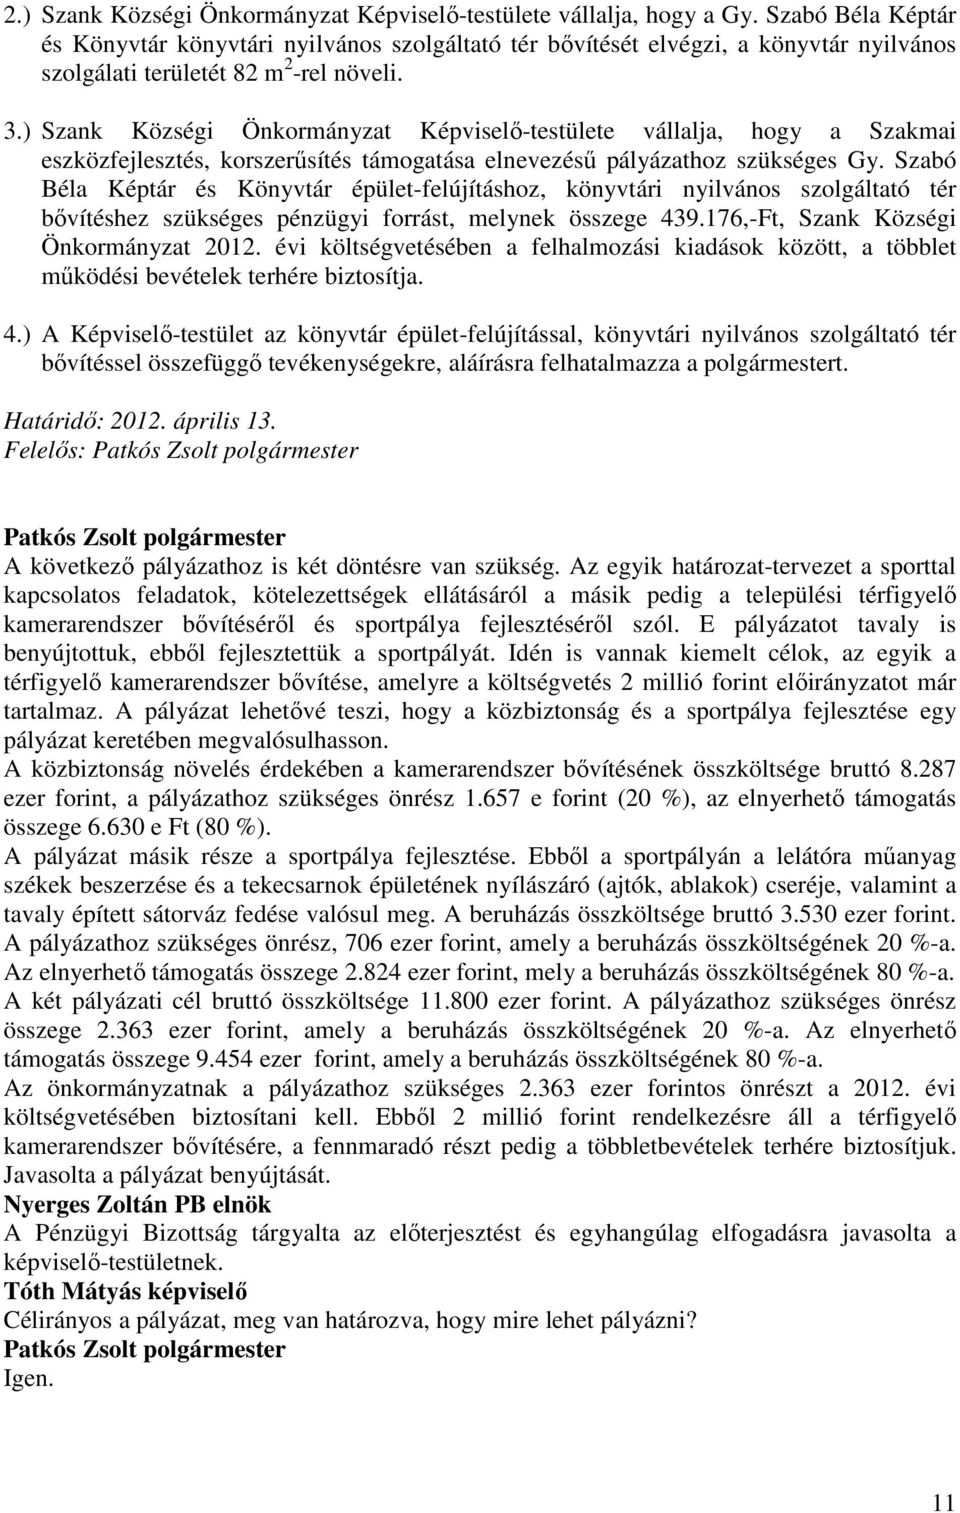 ) Szank Községi Önkormányzat Képviselı-testülete vállalja, hogy a Szakmai eszközfejlesztés, korszerősítés támogatása elnevezéső pályázathoz szükséges Gy.